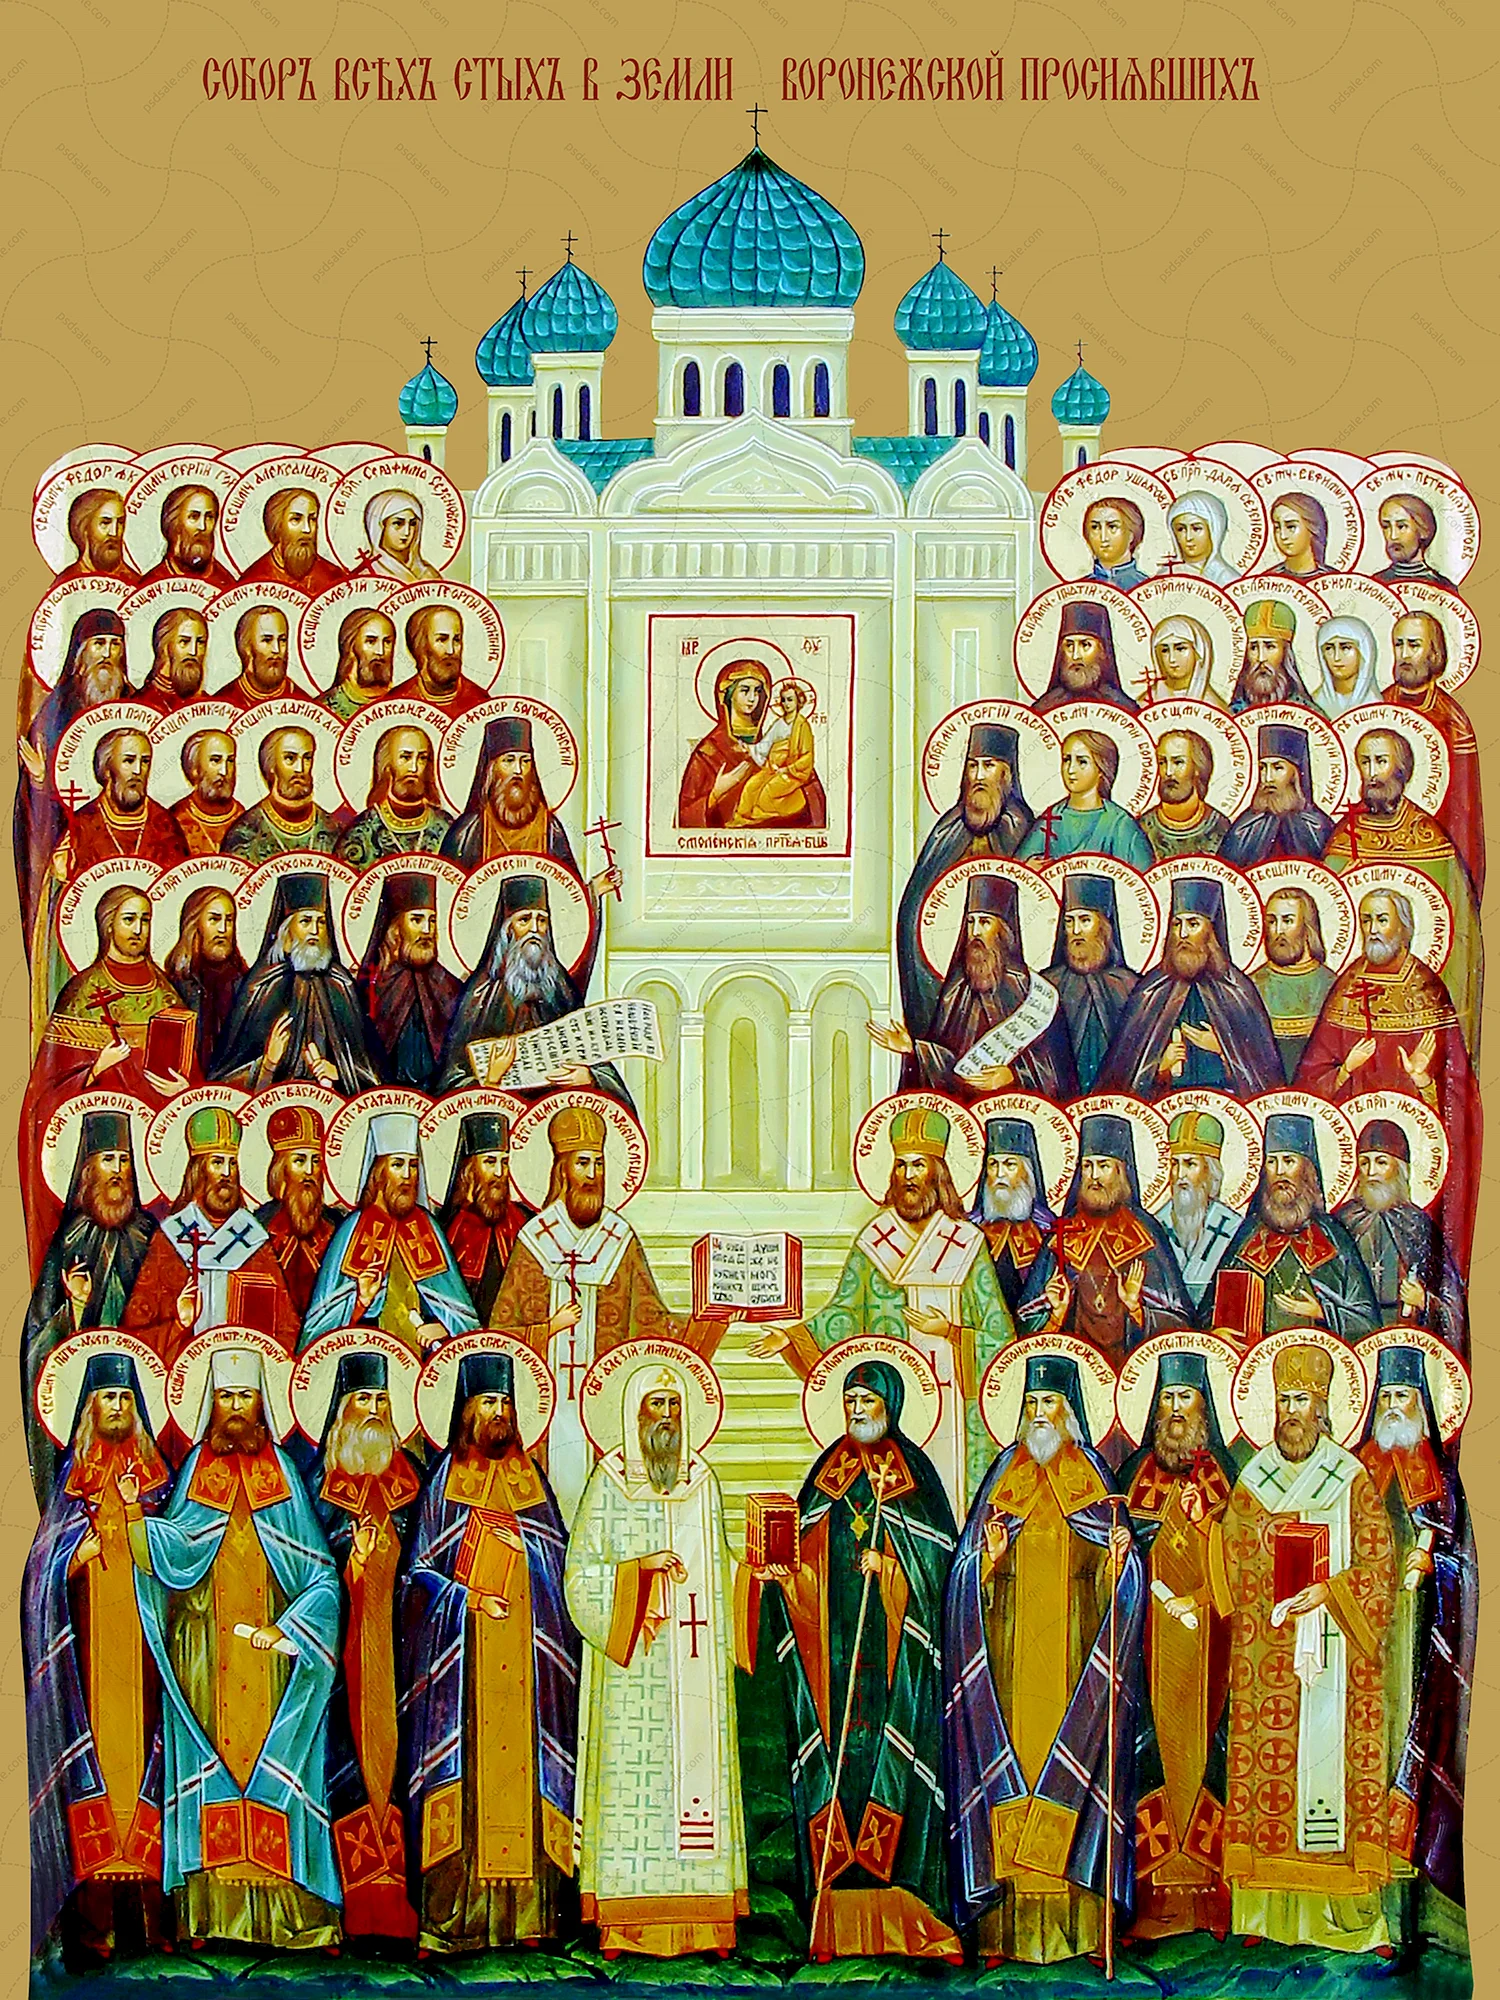 Икона собора всех святых в земле Воронежской просиявших